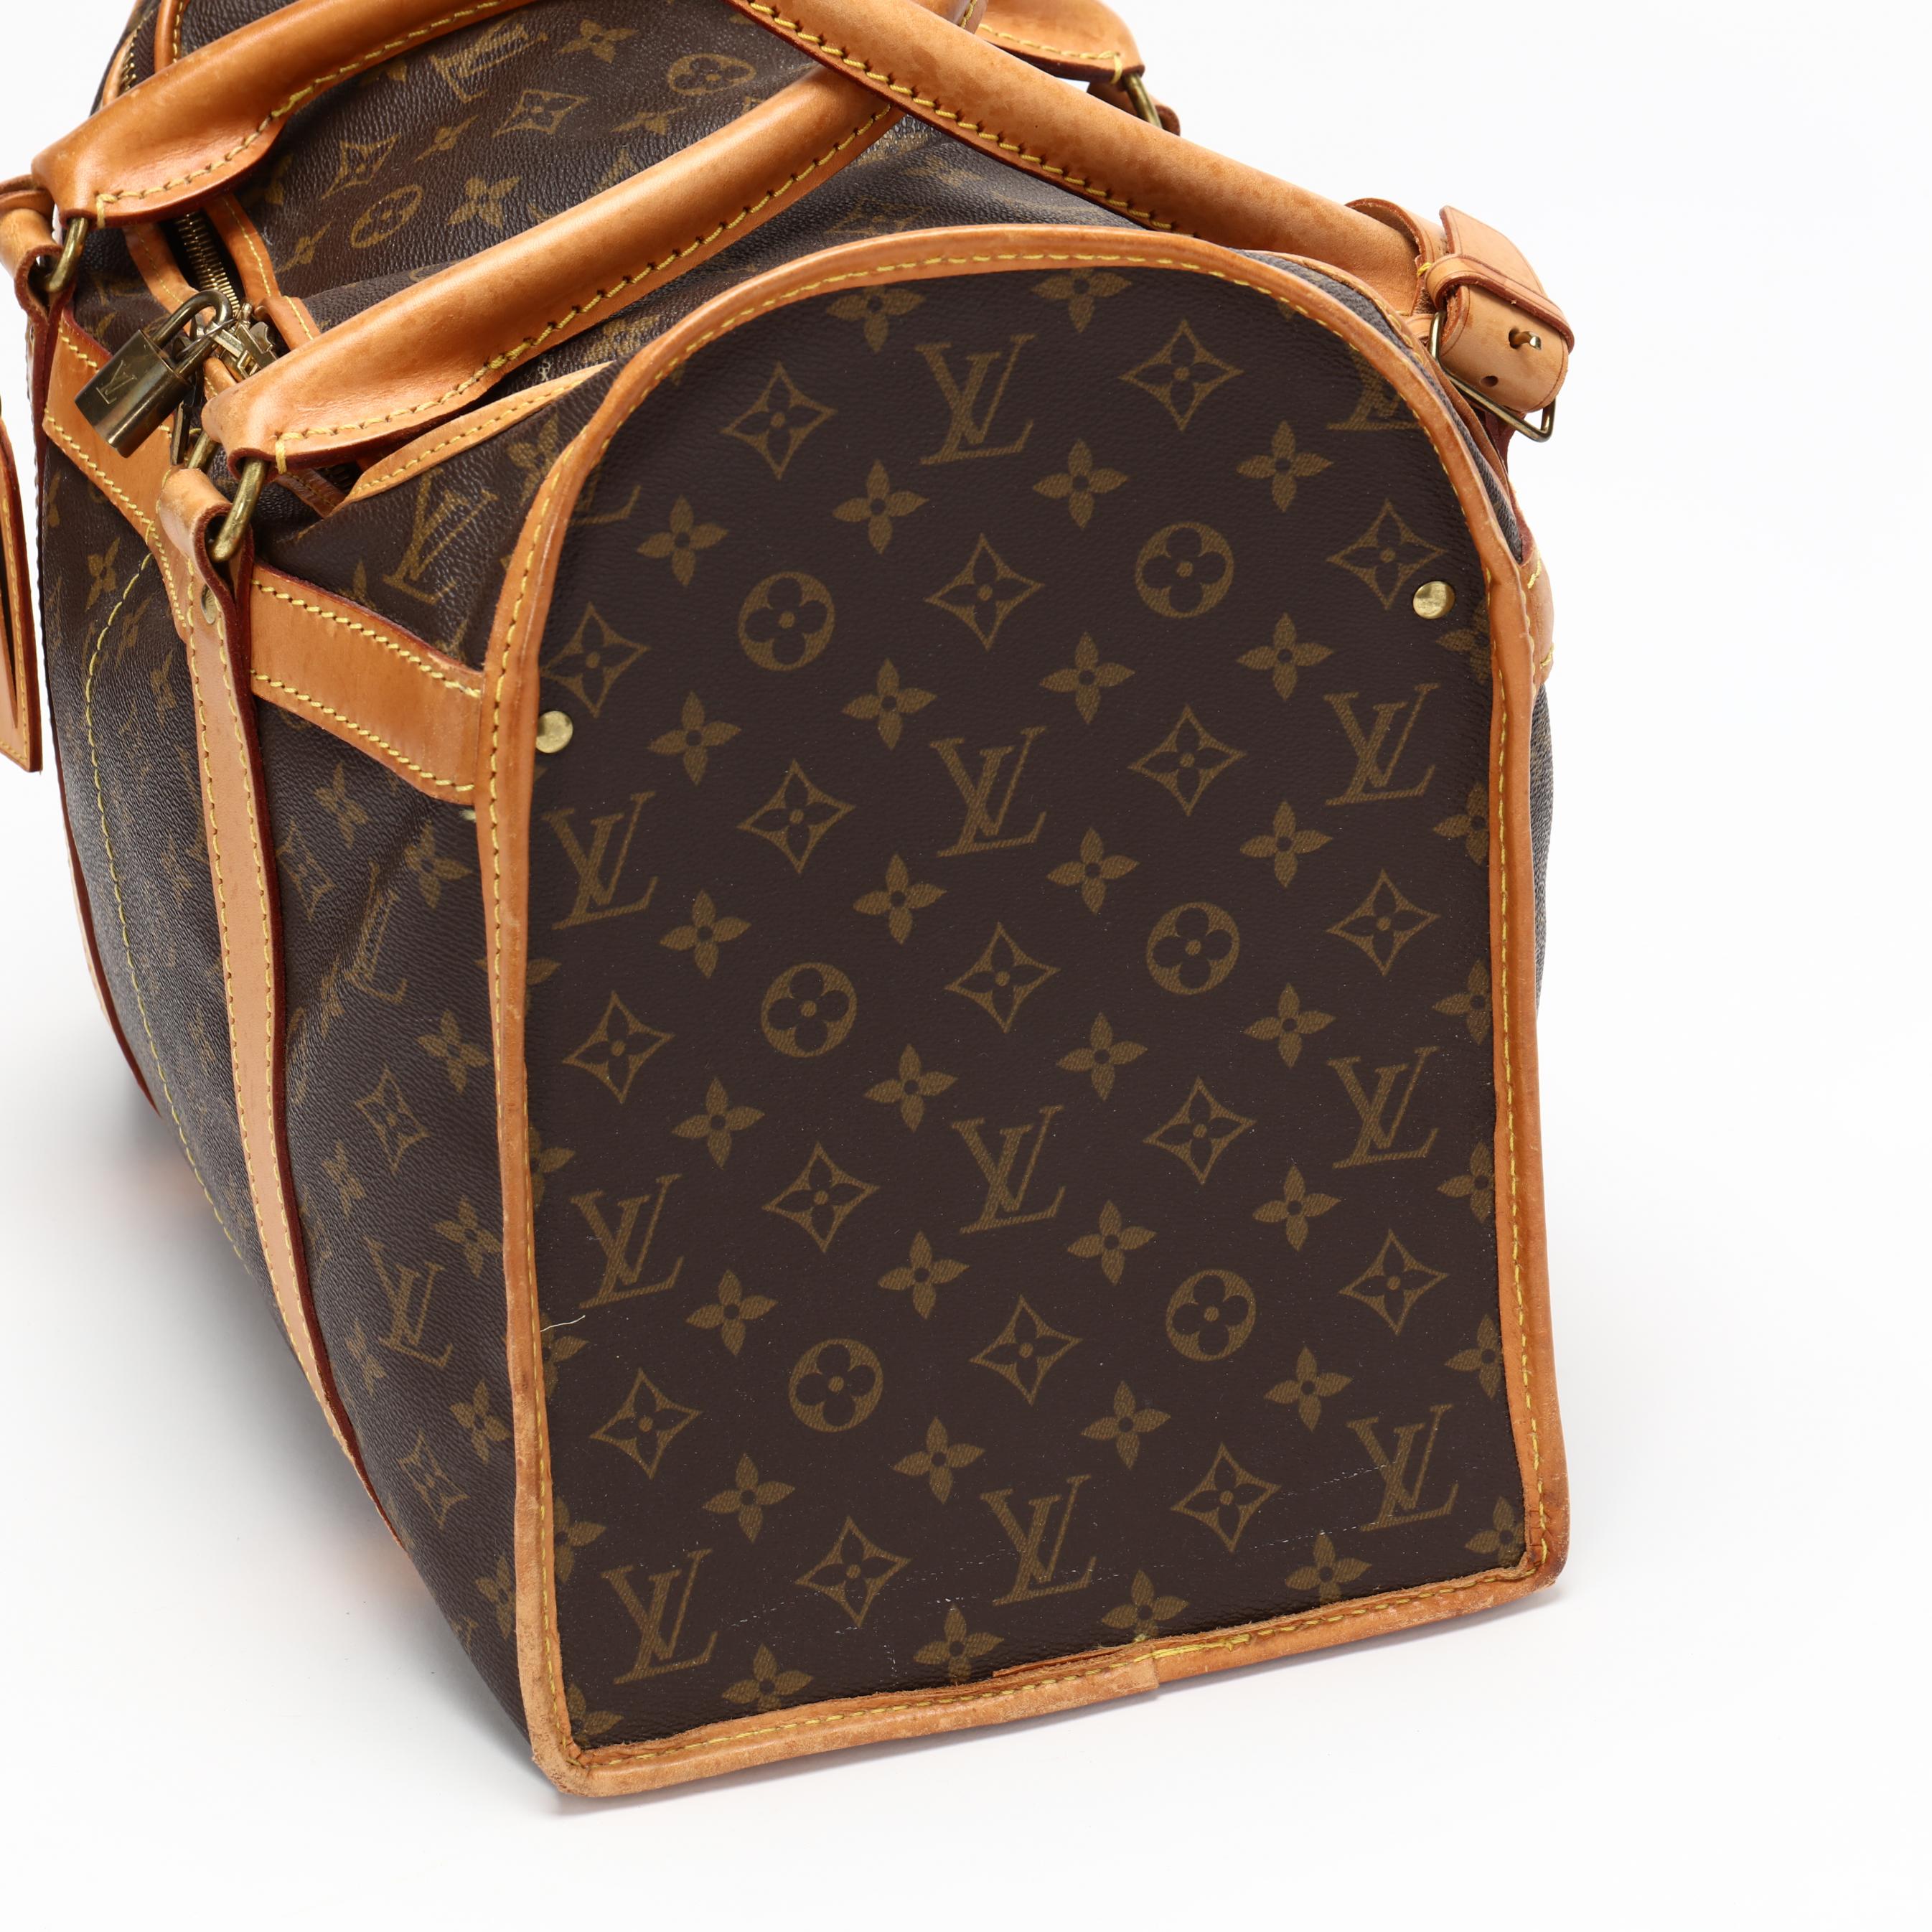 At Auction: Louis Vuitton, Louis Vuitton Sac Souple Travel Bag